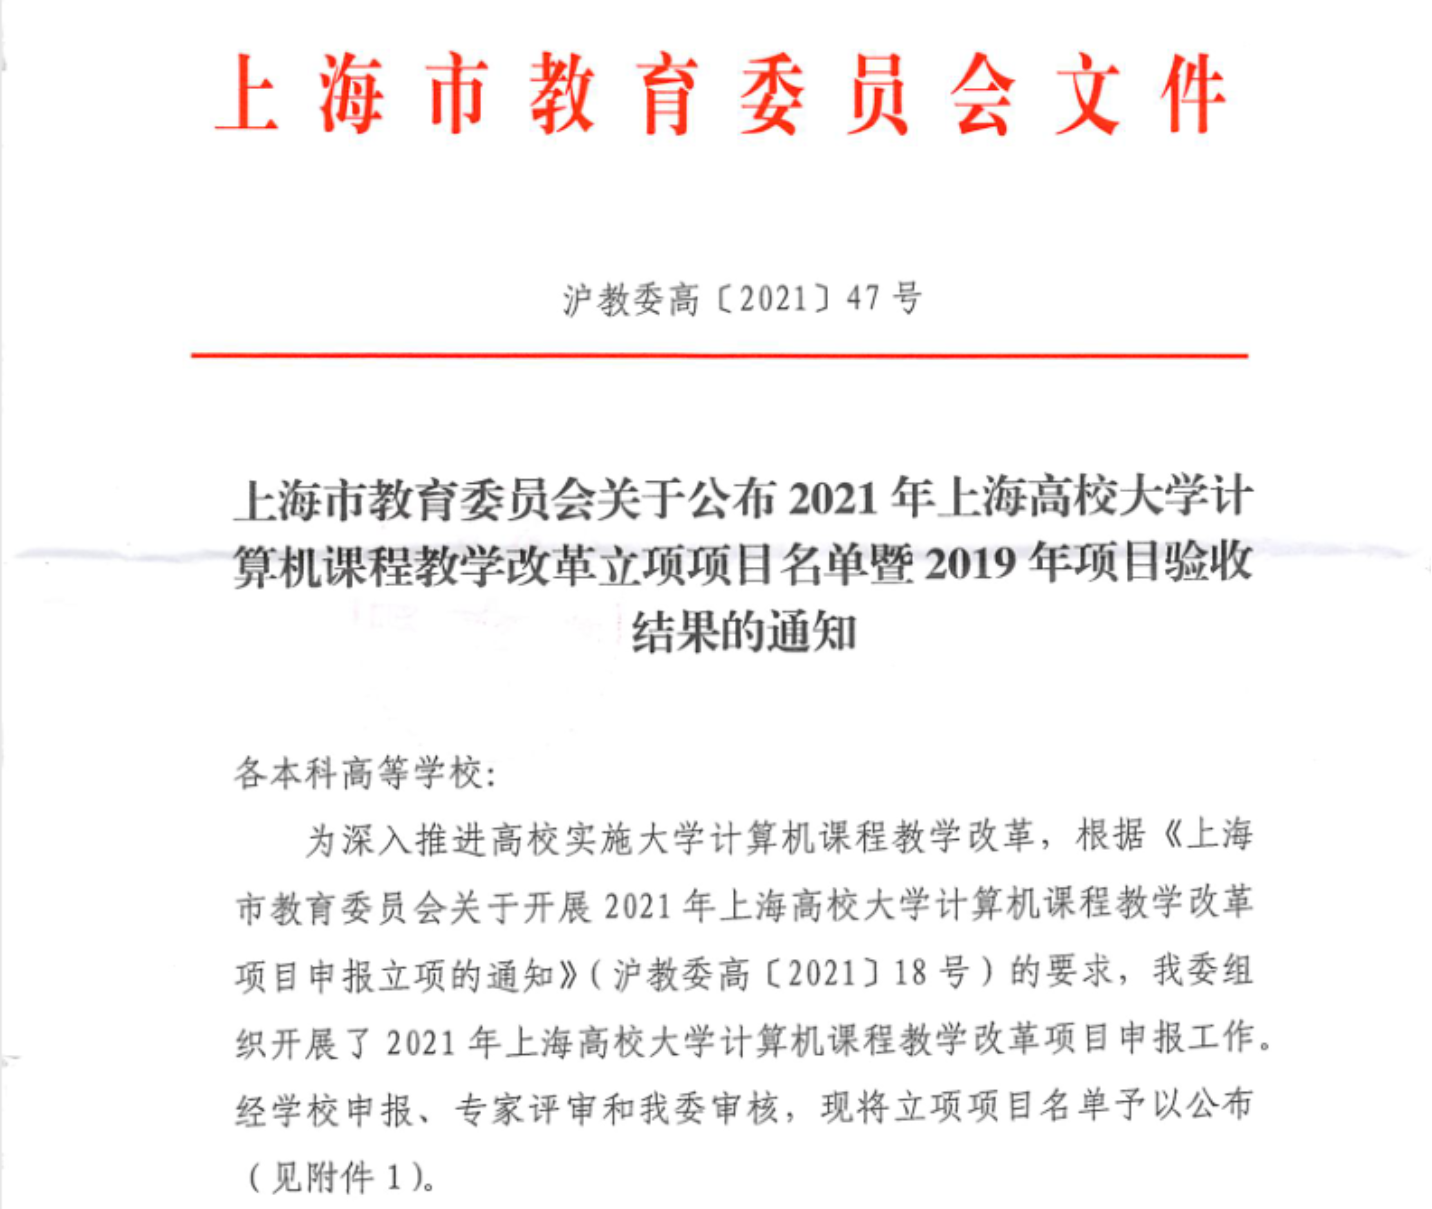 图为《上海市教育委员会关于公布2021年上海高校大学计算机课程教学改革立项项目名单的通知》